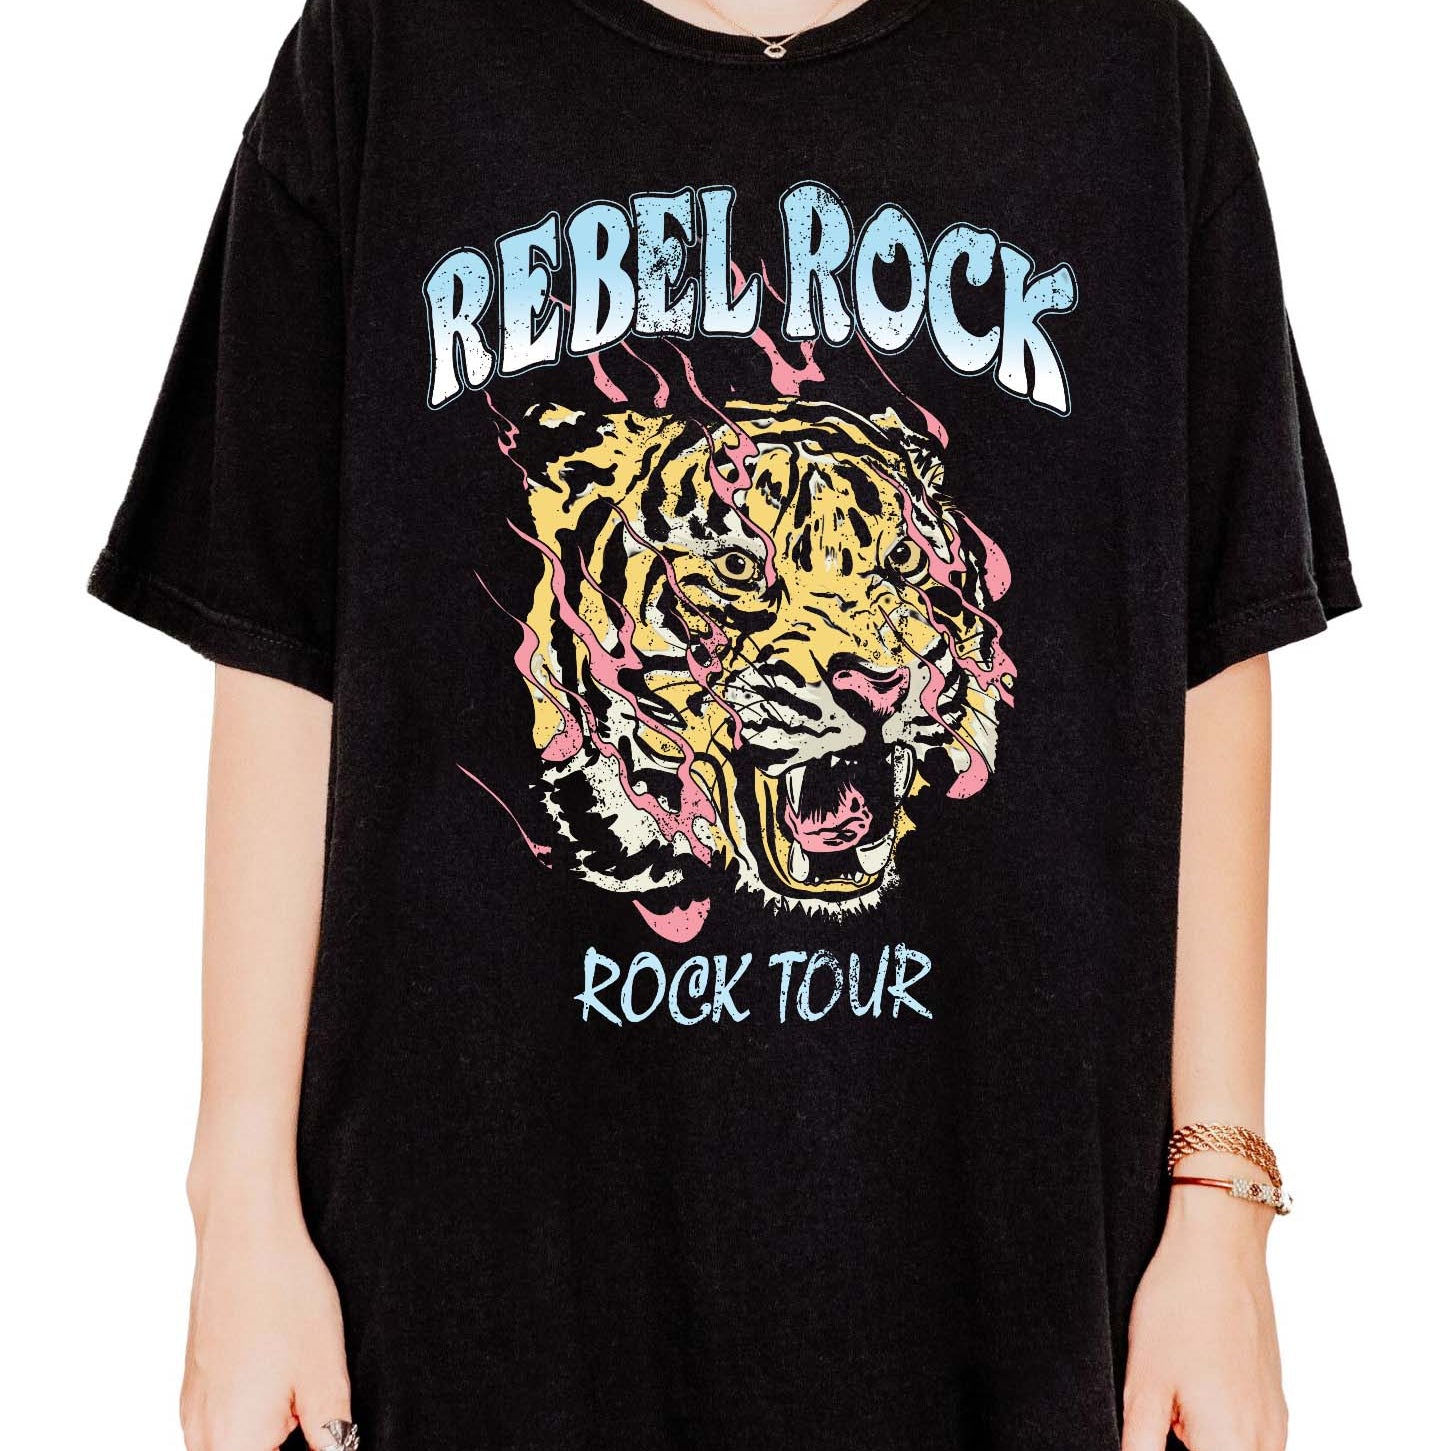 Rebel Rock Tour Tee